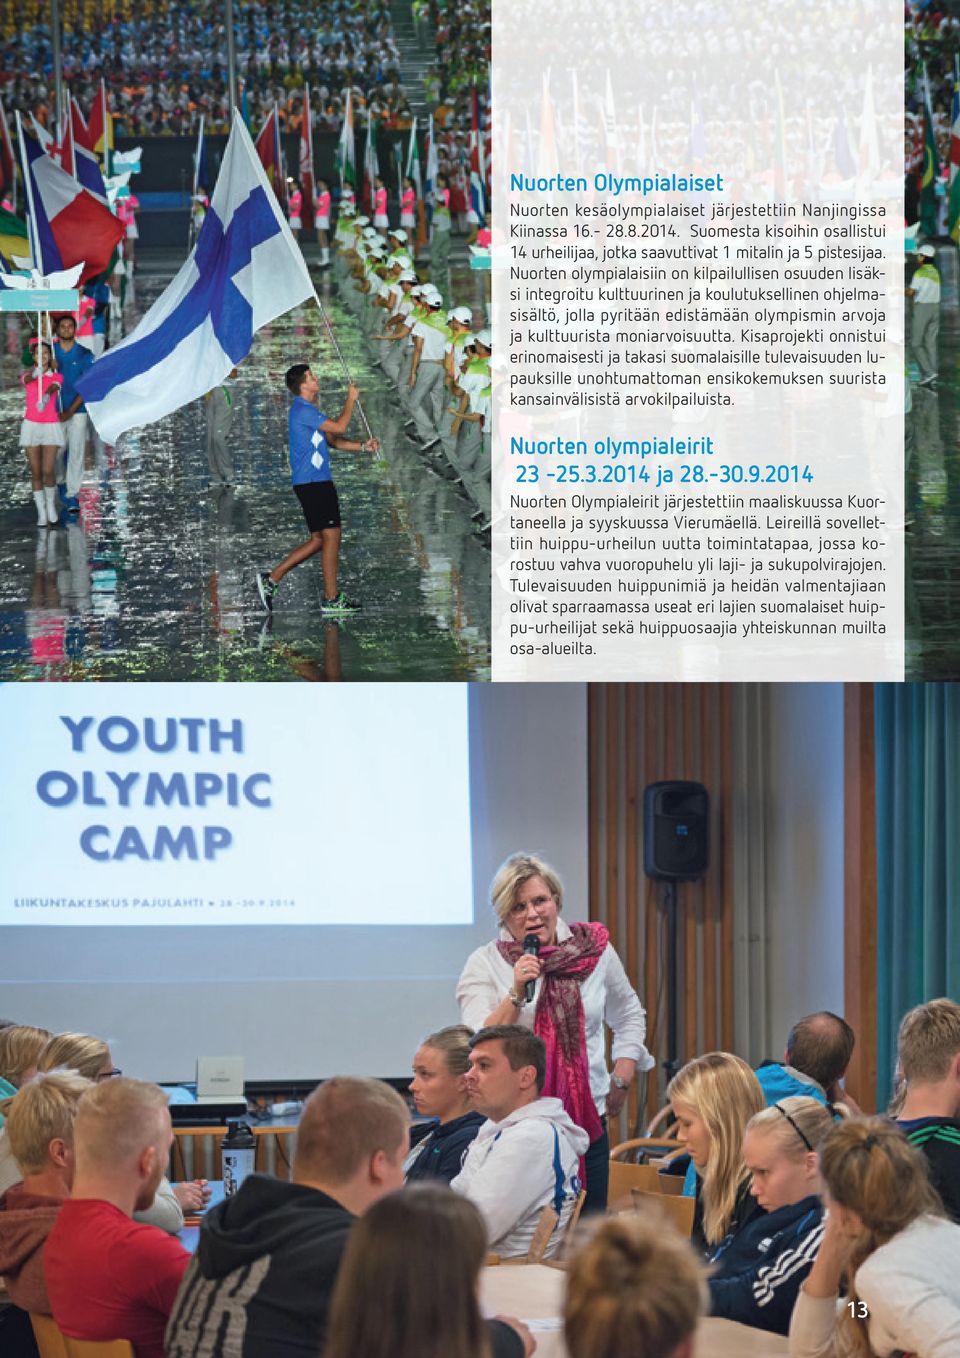 Kisaprojekti onnistui erinomaisesti ja takasi suomalaisille tulevaisuuden lupauksille unohtumattoman ensikokemuksen suurista kansainvälisistä arvokilpailuista. Nuorten olympialeirit 23-25.3.2014 ja 28.